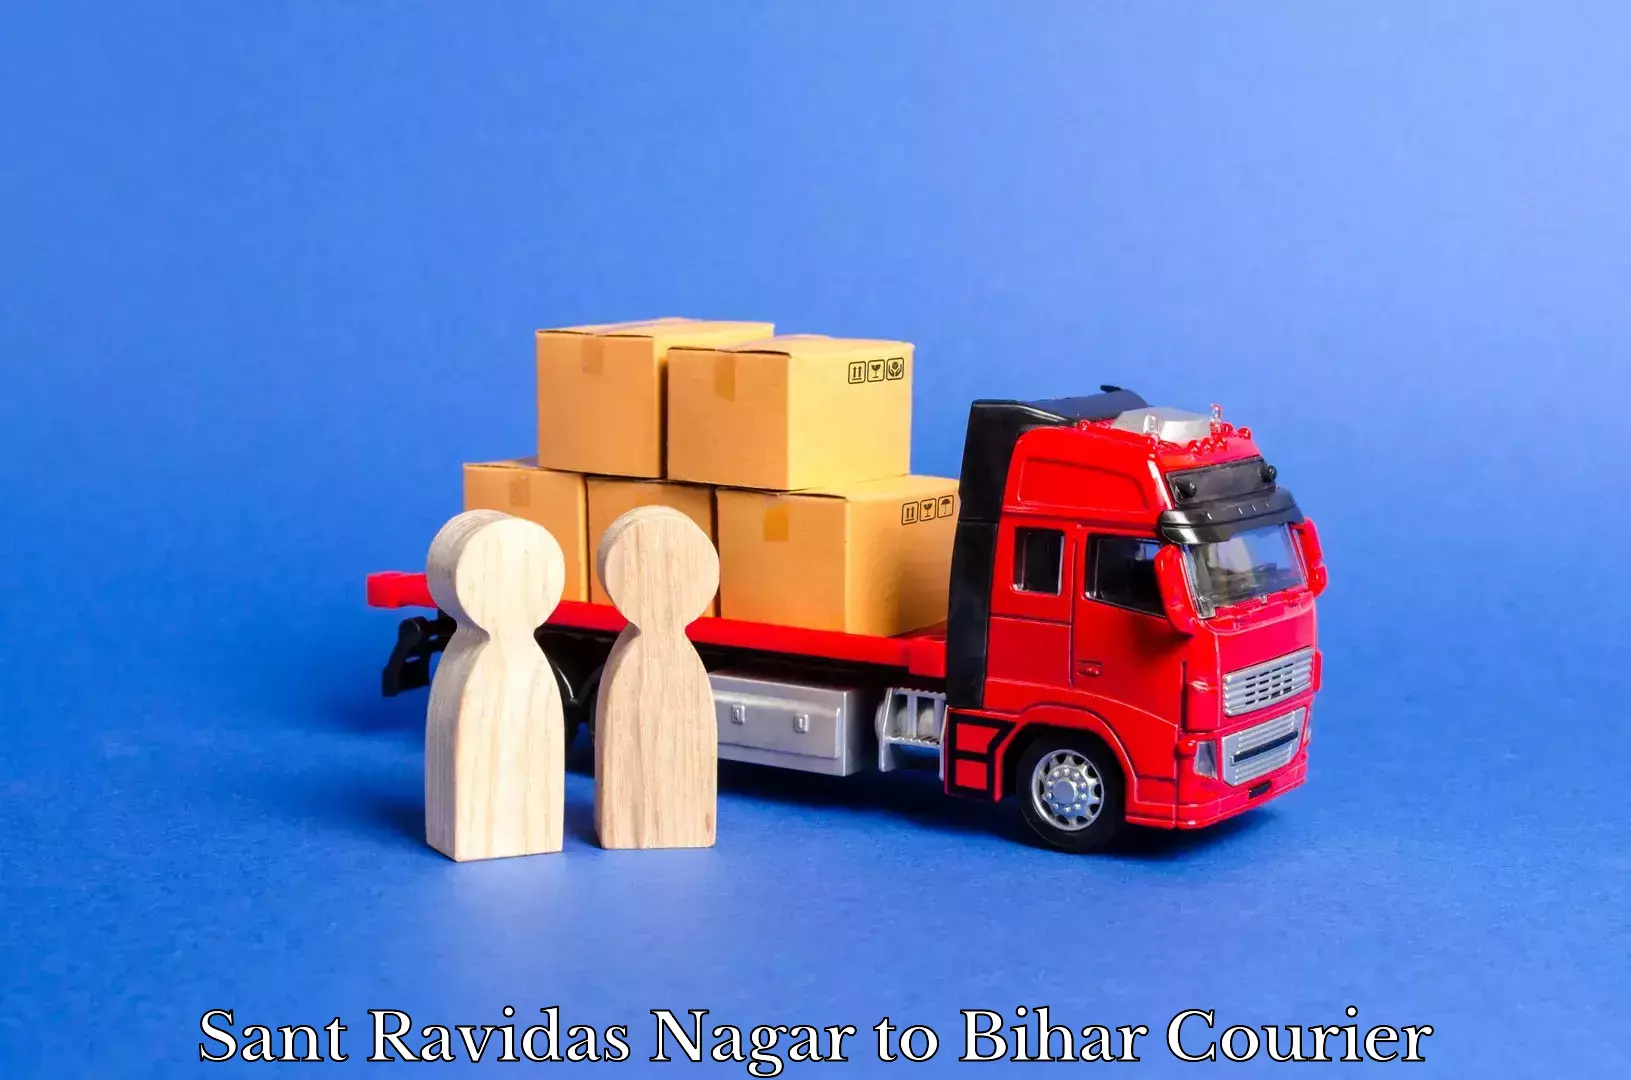 Courier service partnerships Sant Ravidas Nagar to Bihar